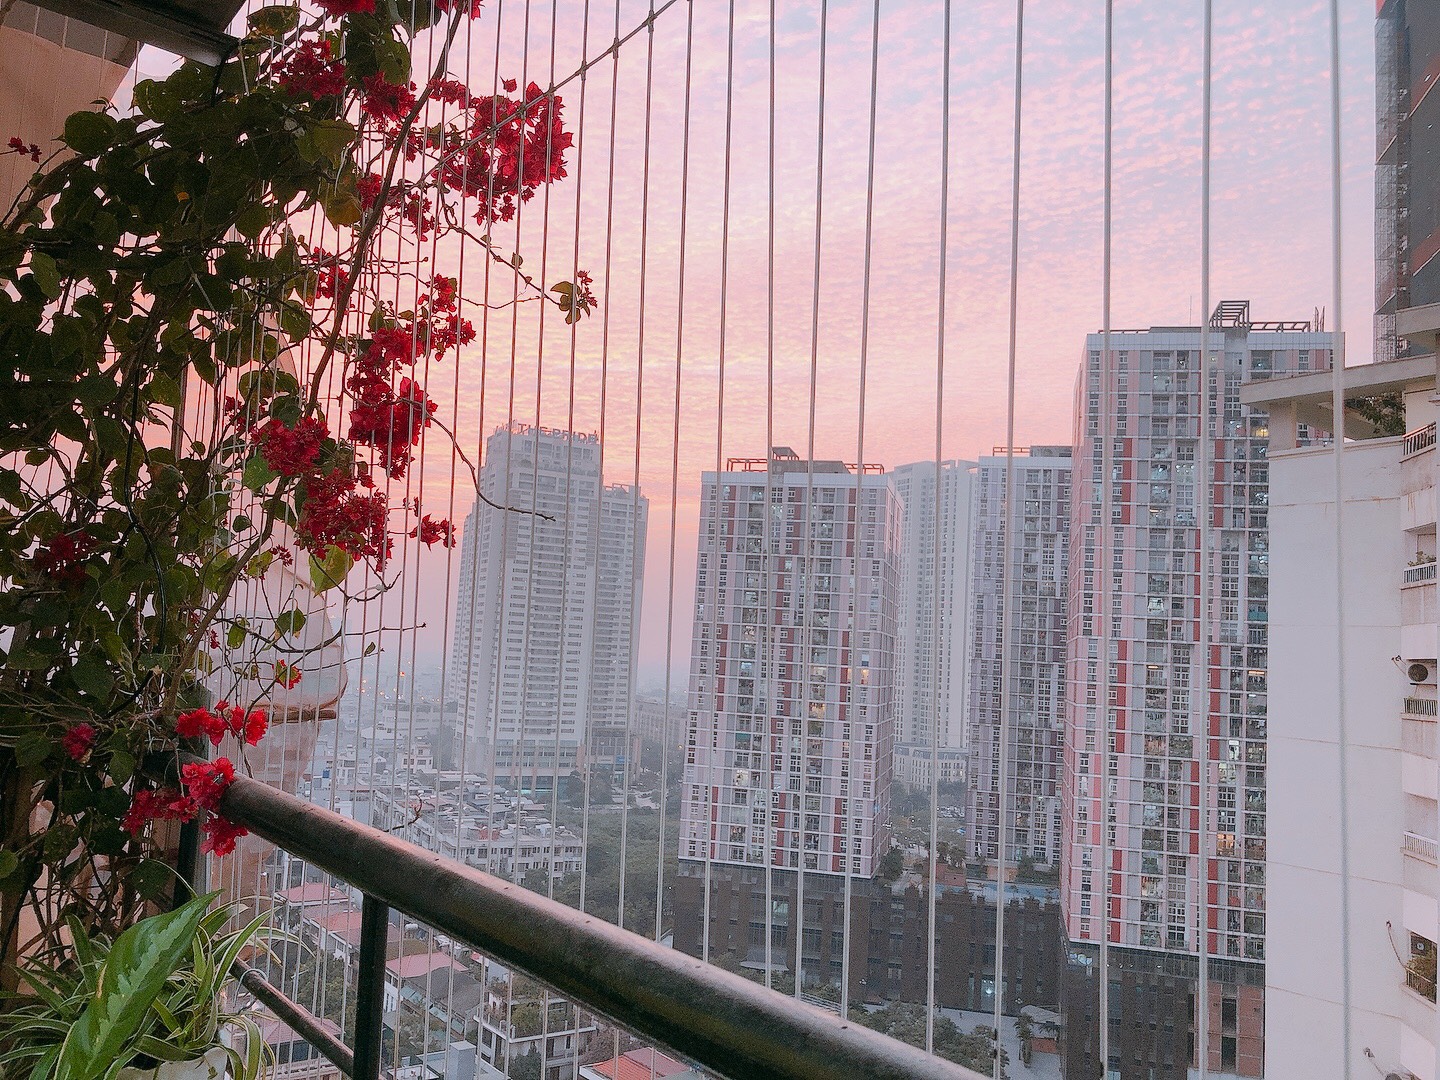 Cặp vợ chồng dùng gần 1 tỷ cải tạo lại căn hộ 138m² tại Văn Khê theo phong cách Indochine hiện đại, tone vàng hút mắt - Ảnh 16.